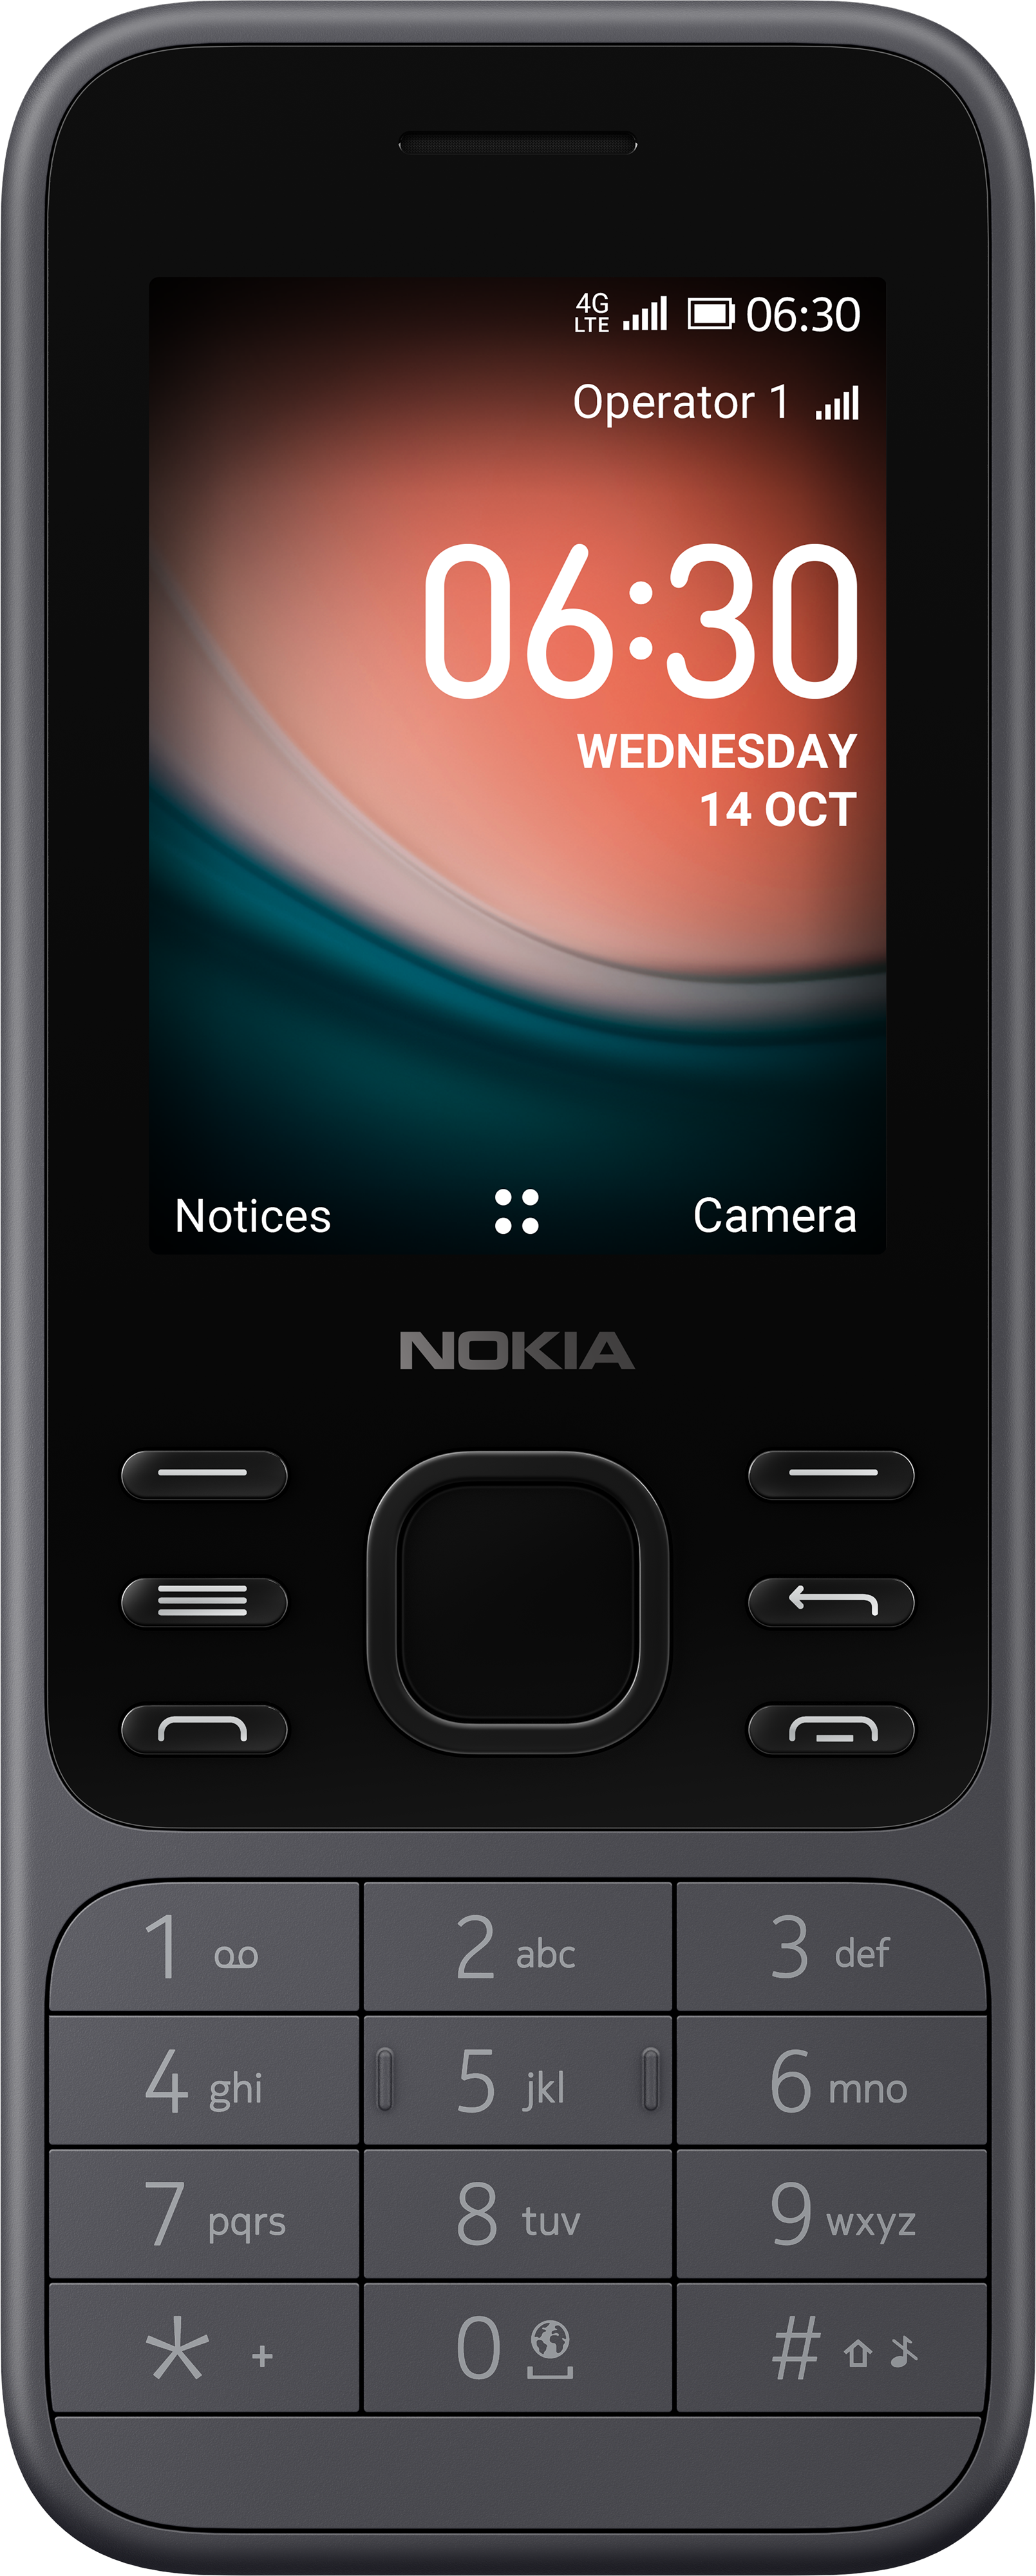 latest Nokia phones accessories